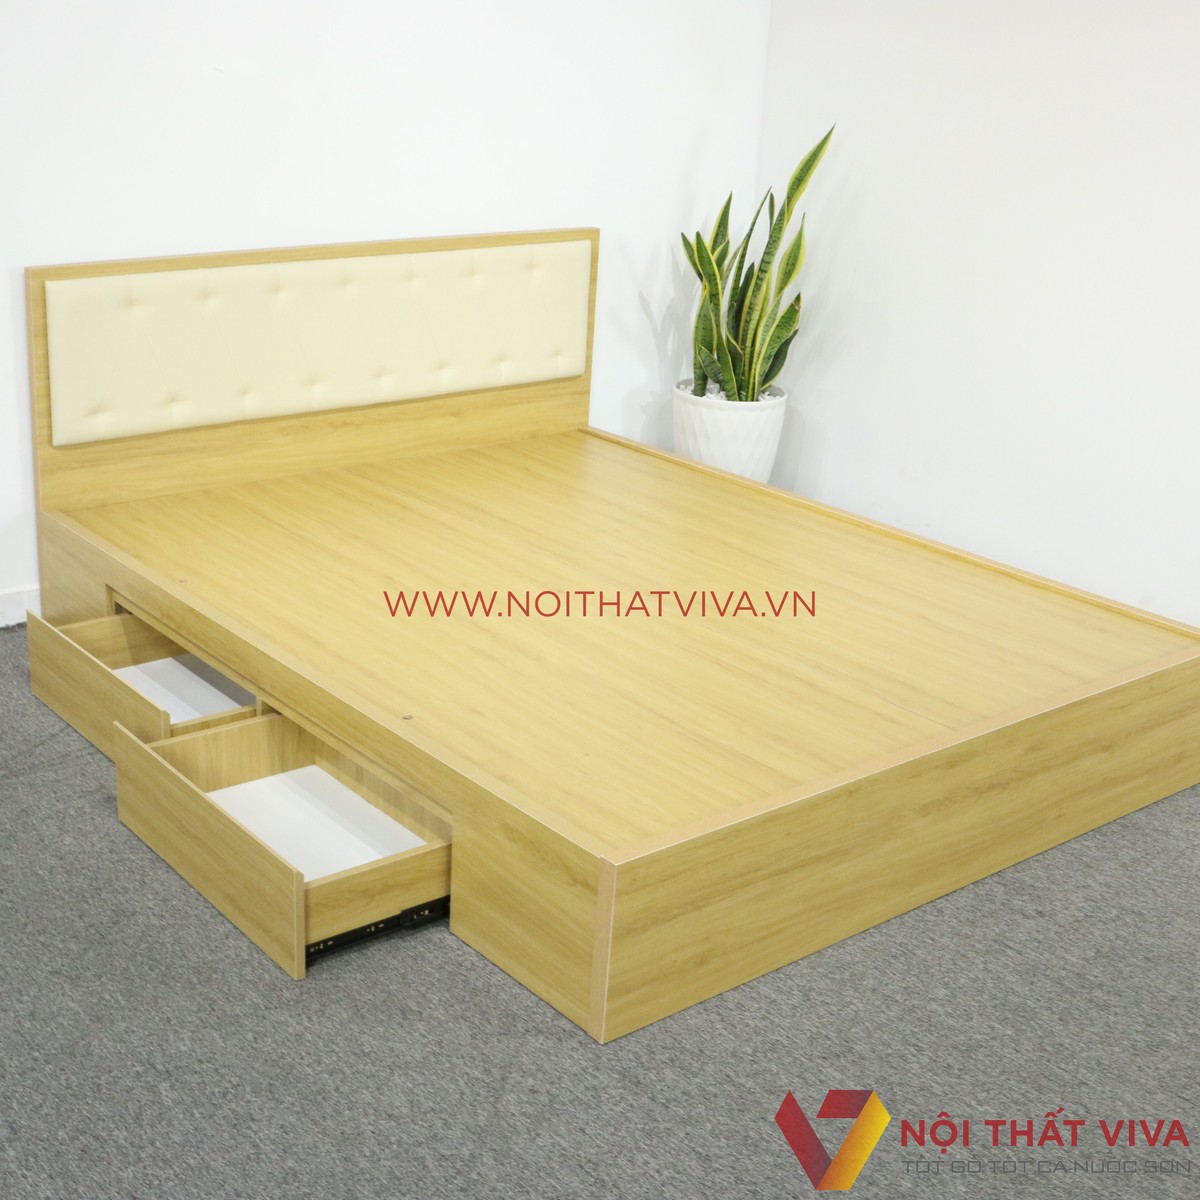  Mẫu giường ngủ gỗ MDF đẹp